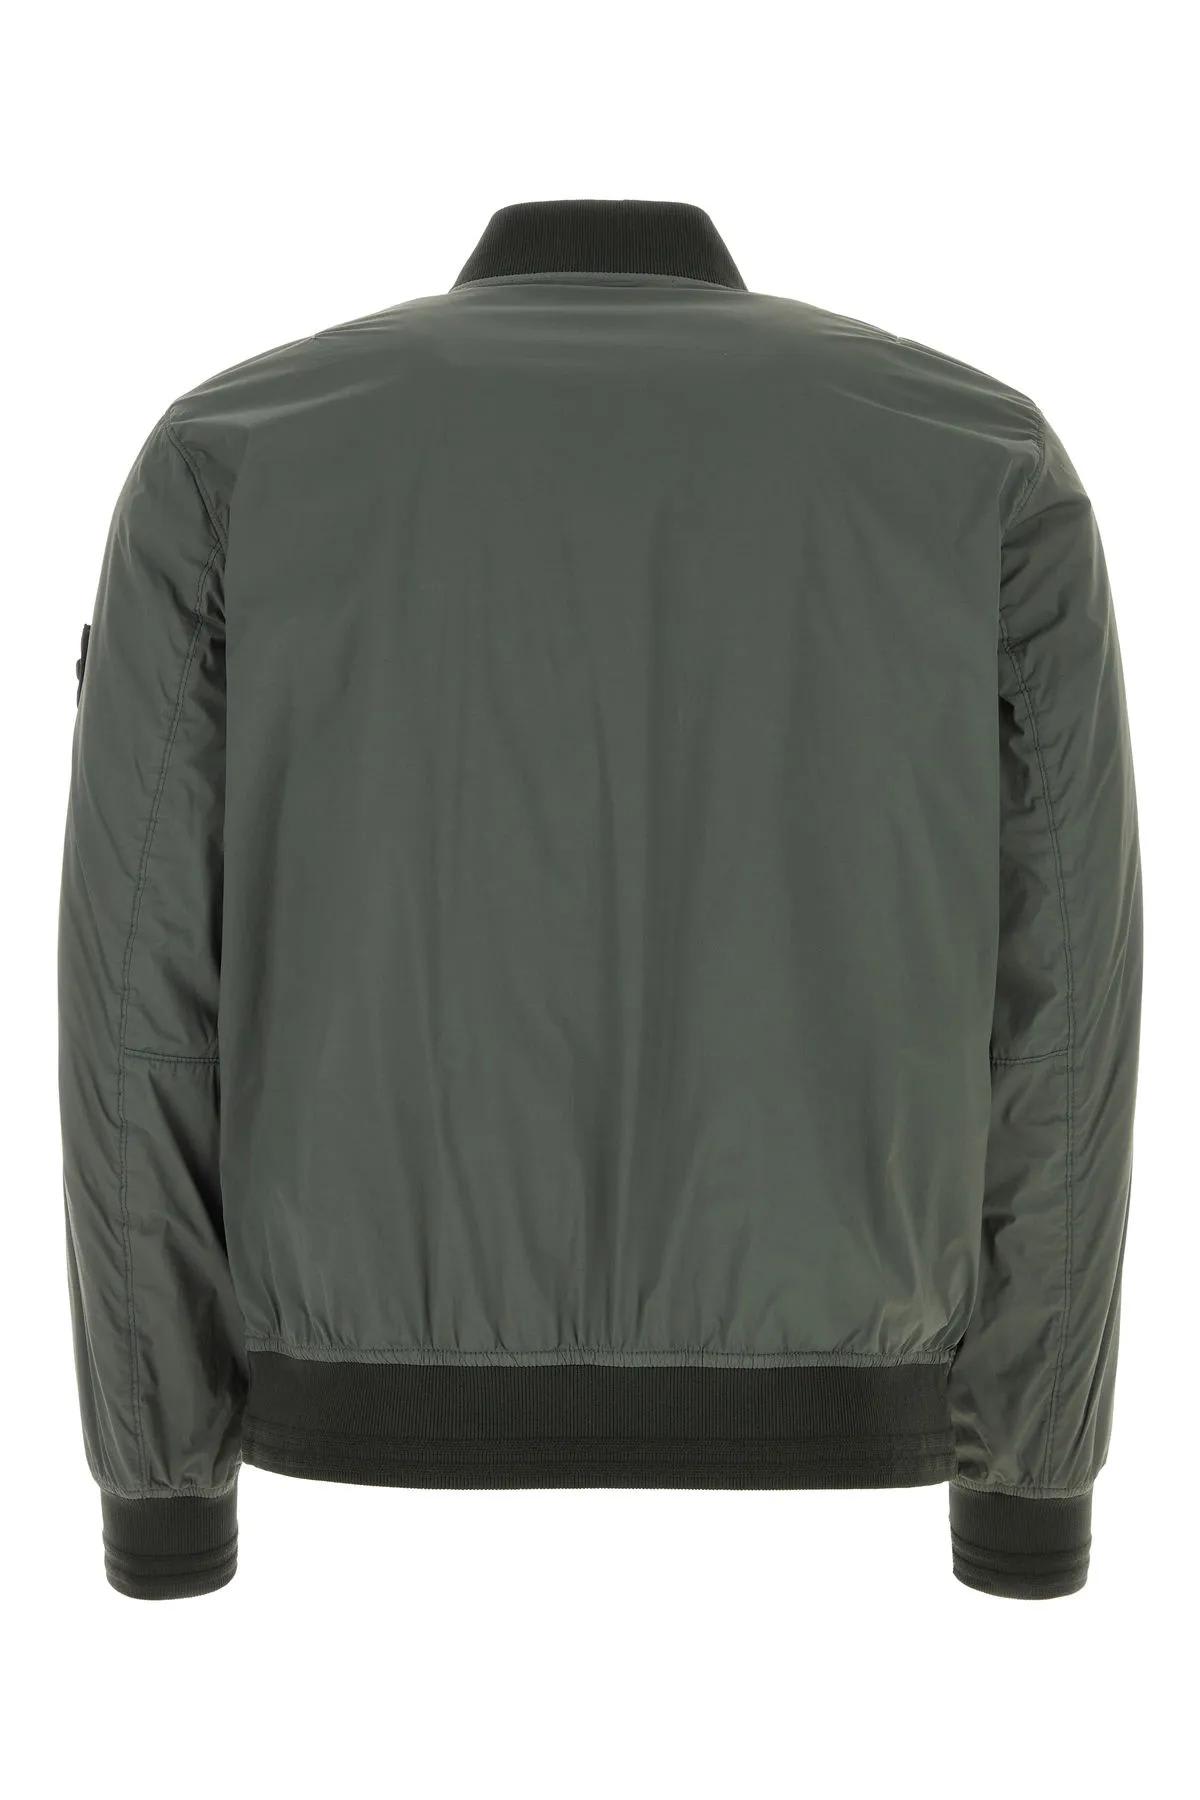 Shop Stone Island Dark Green Stretch Nylon Padded Jacket